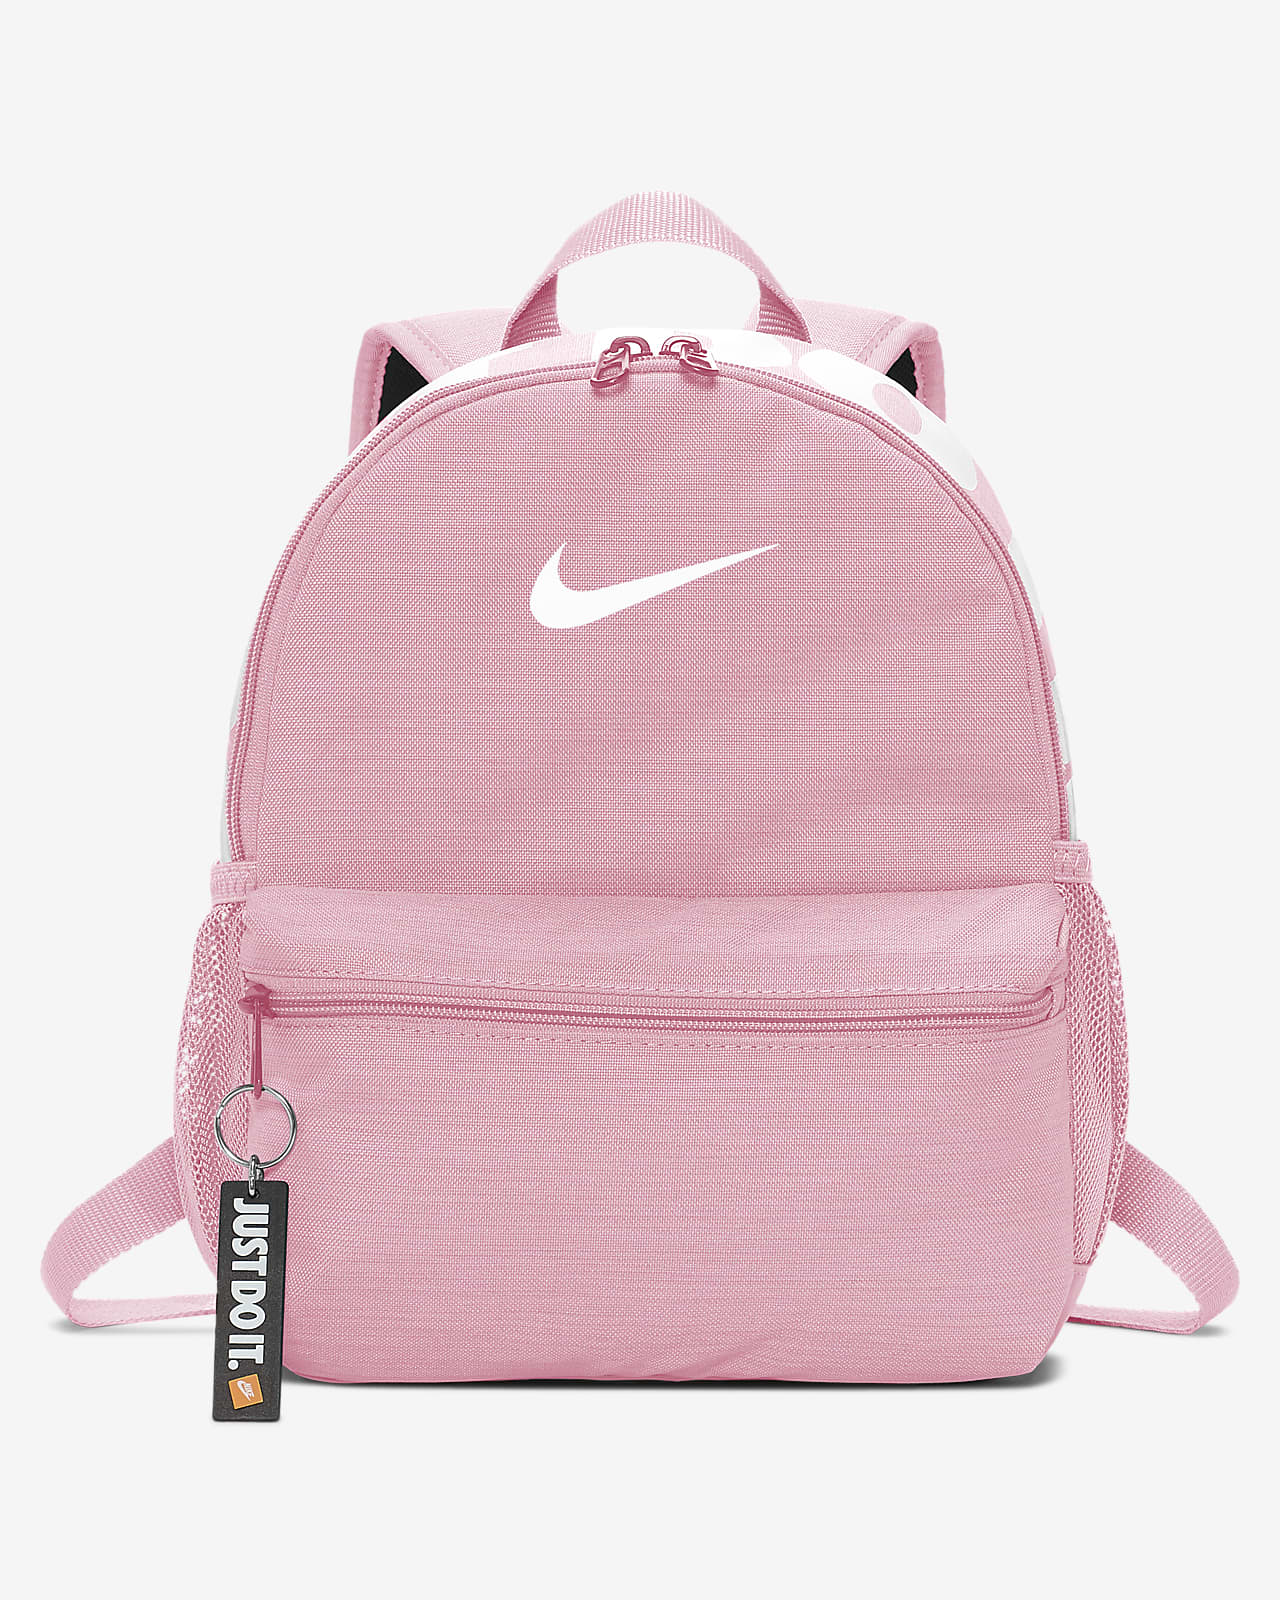 nike backpack pink